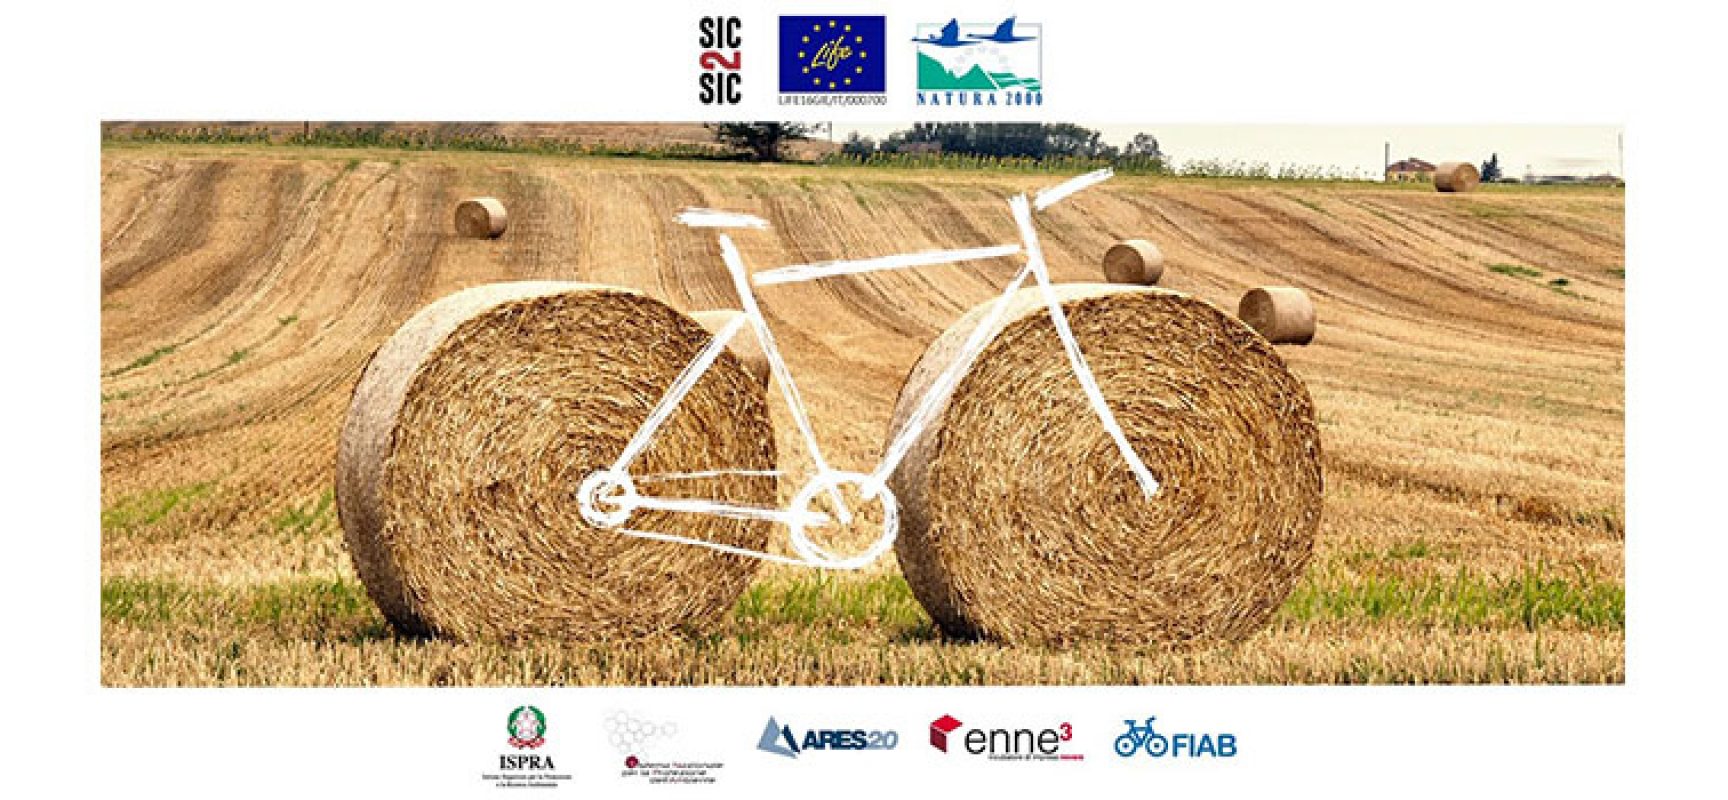 Seimila chilometri in bici per l’ambiente: il progetto Life Sic2sic fa tappa a Bisceglie